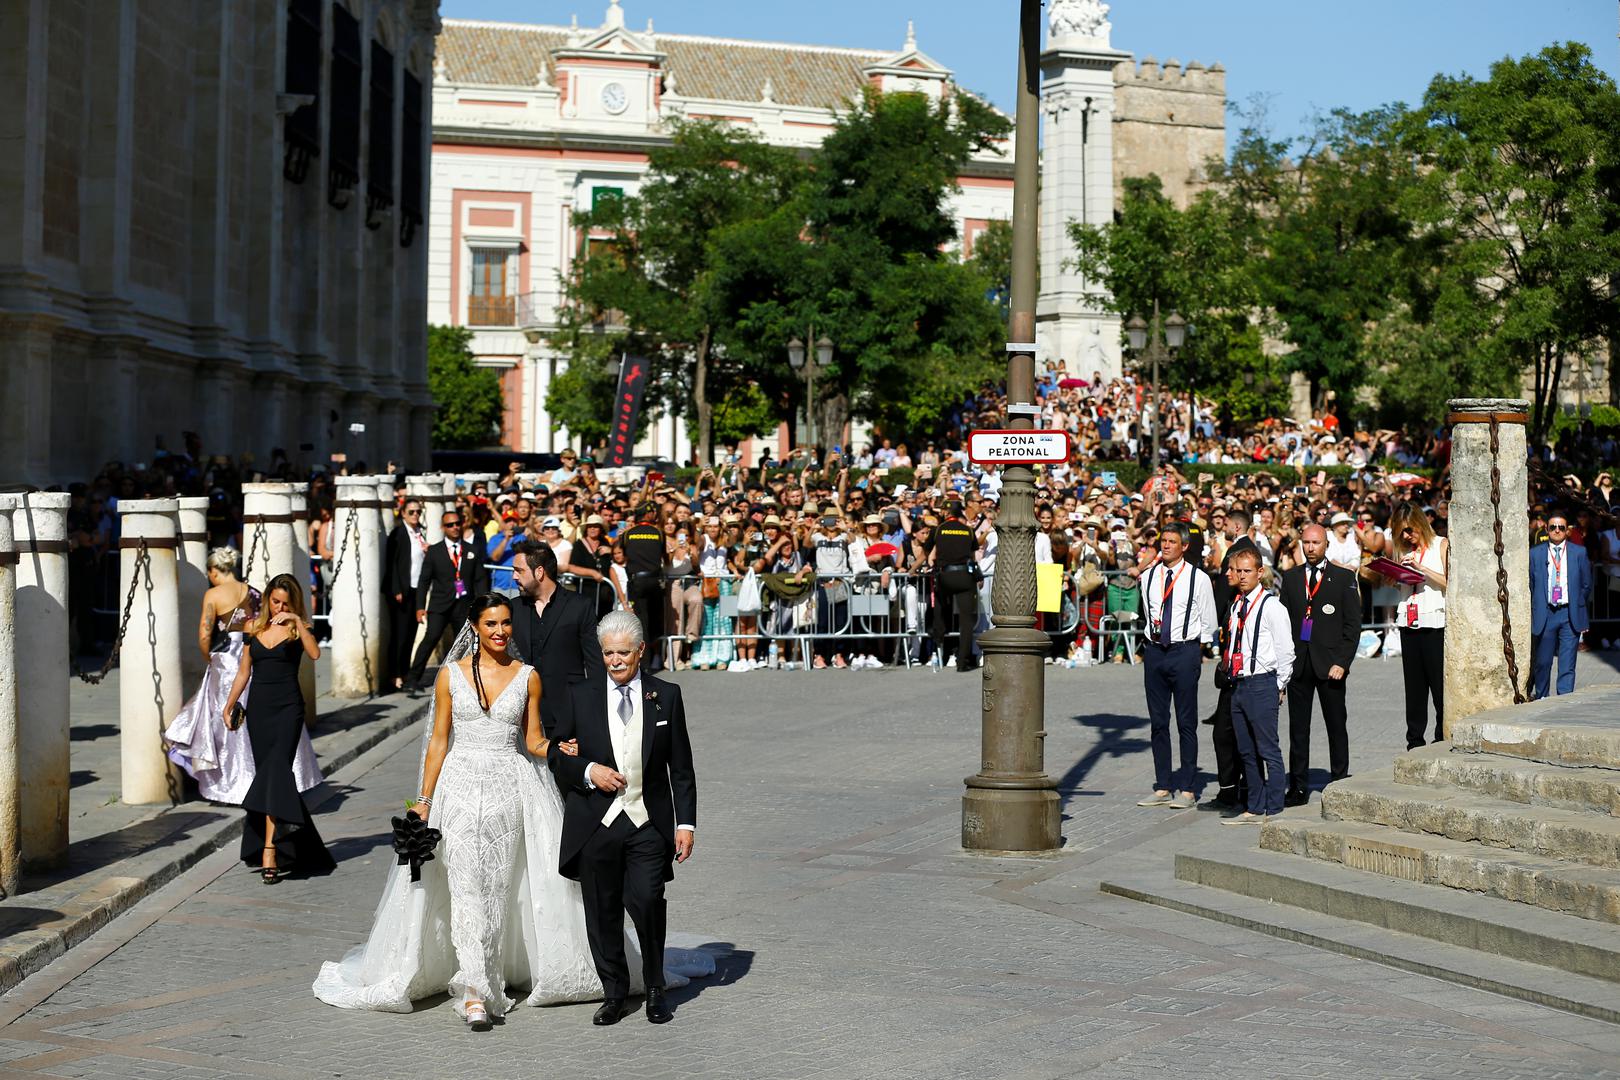 Događaj koji su u Španjolskoj prozvali 'vjenčanjem godine' pravi je spektakl, a na svadbu je stiglo više od 500 ljudi iz svijeta sporta i šoubiza. 

